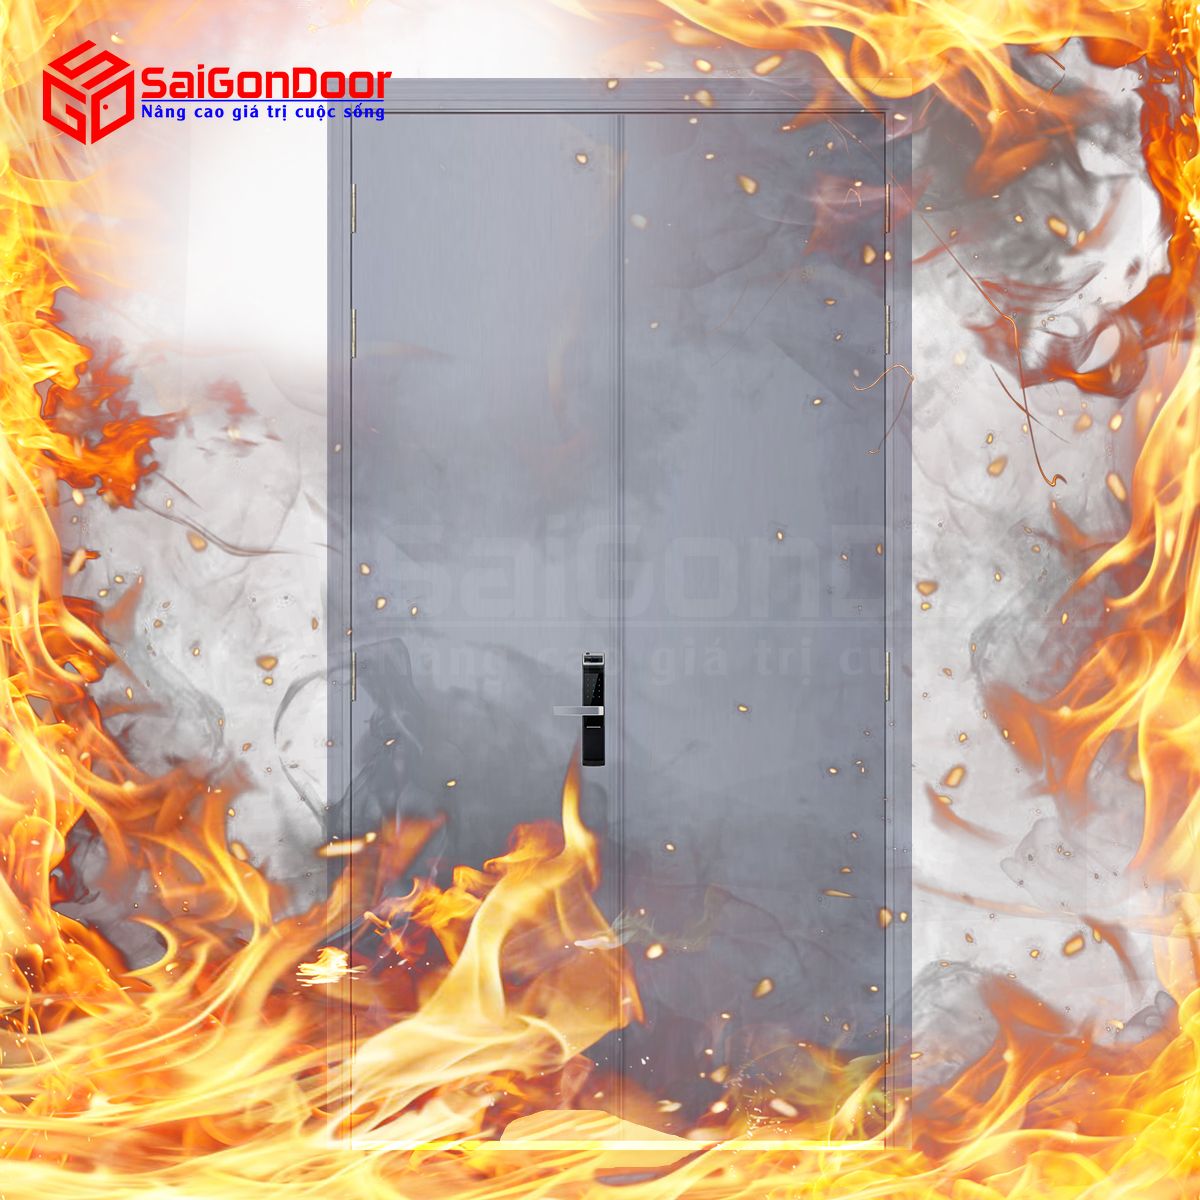 Cửa gỗ chống cháy giúp ngăn cháy hiệu quả đảm bảo an toàn khi có sự cố xảy ra